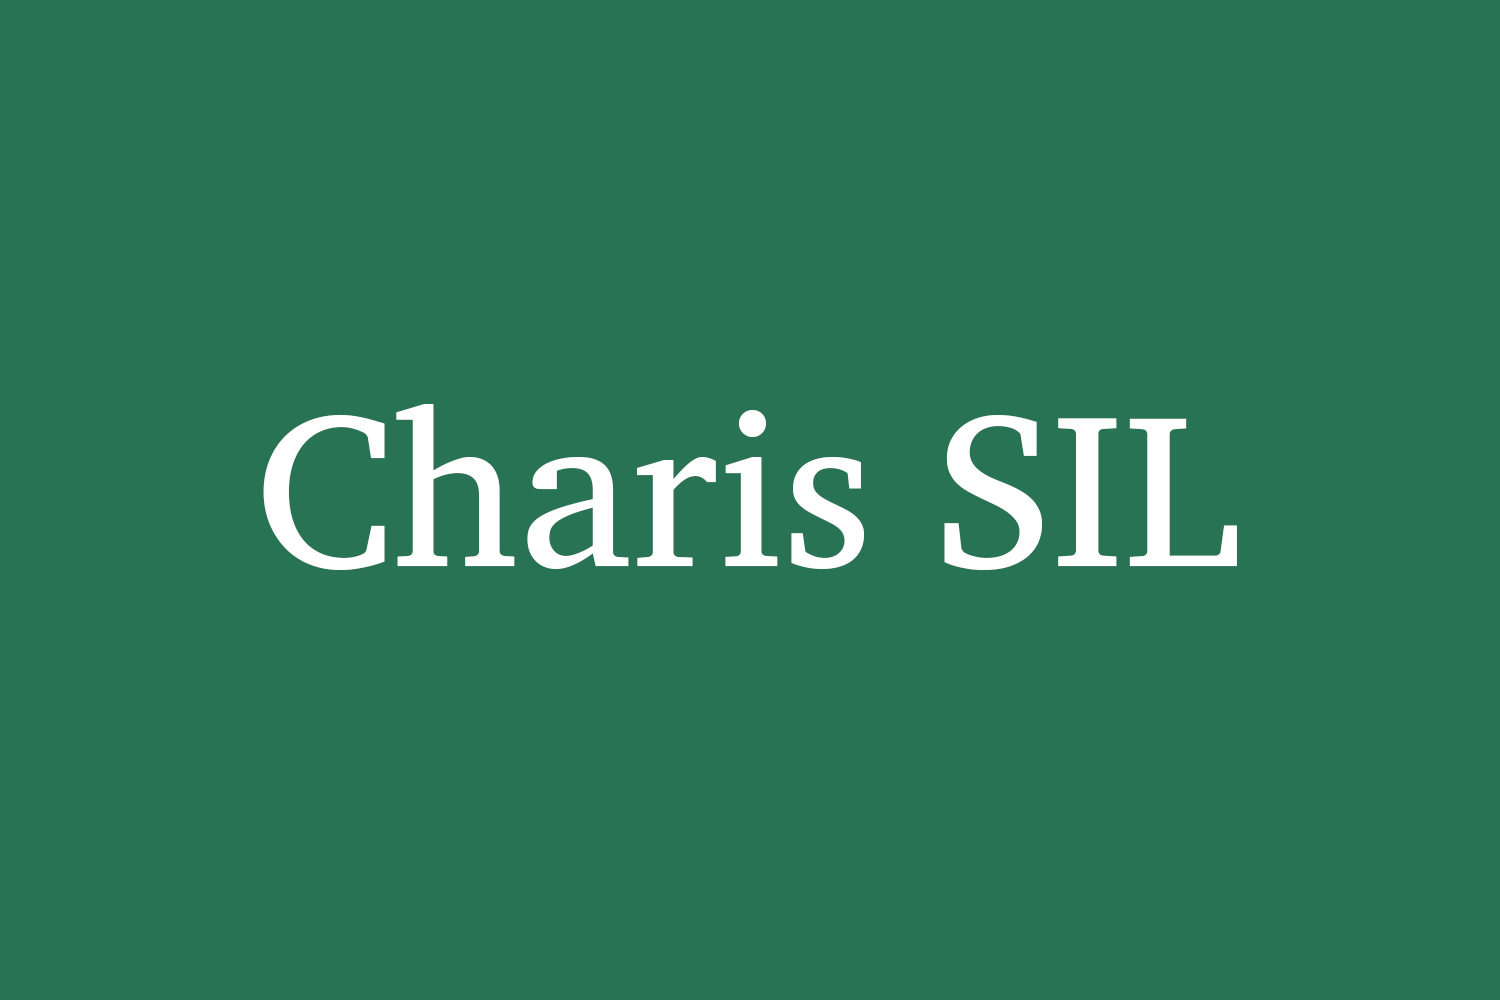 Charis SIL